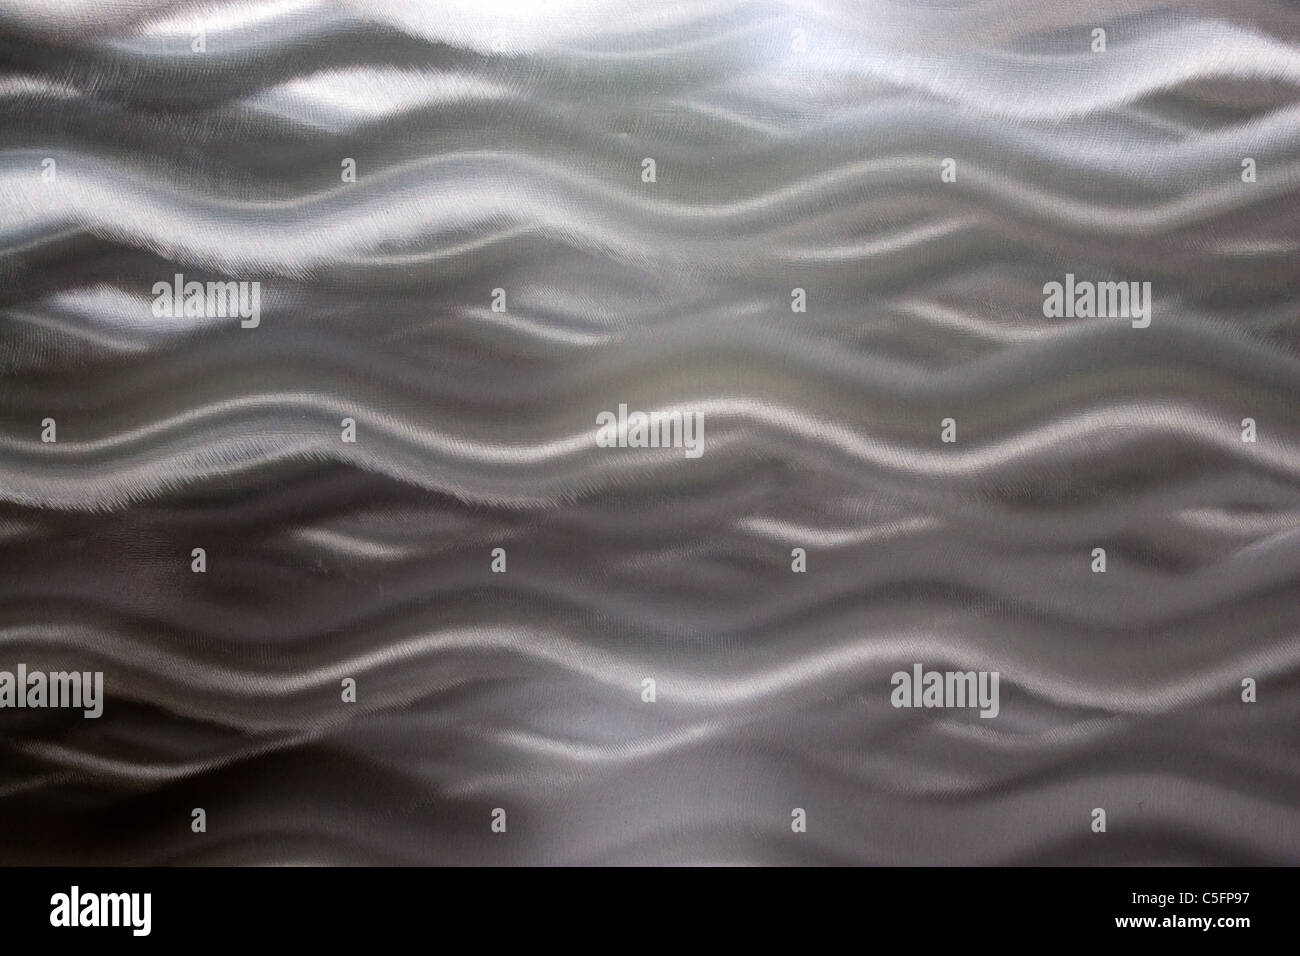 Eine sehr einzigartige gebürstetem Aluminium Textur, die ideal für einen metallischen Hintergrund funktioniert. Stockfoto